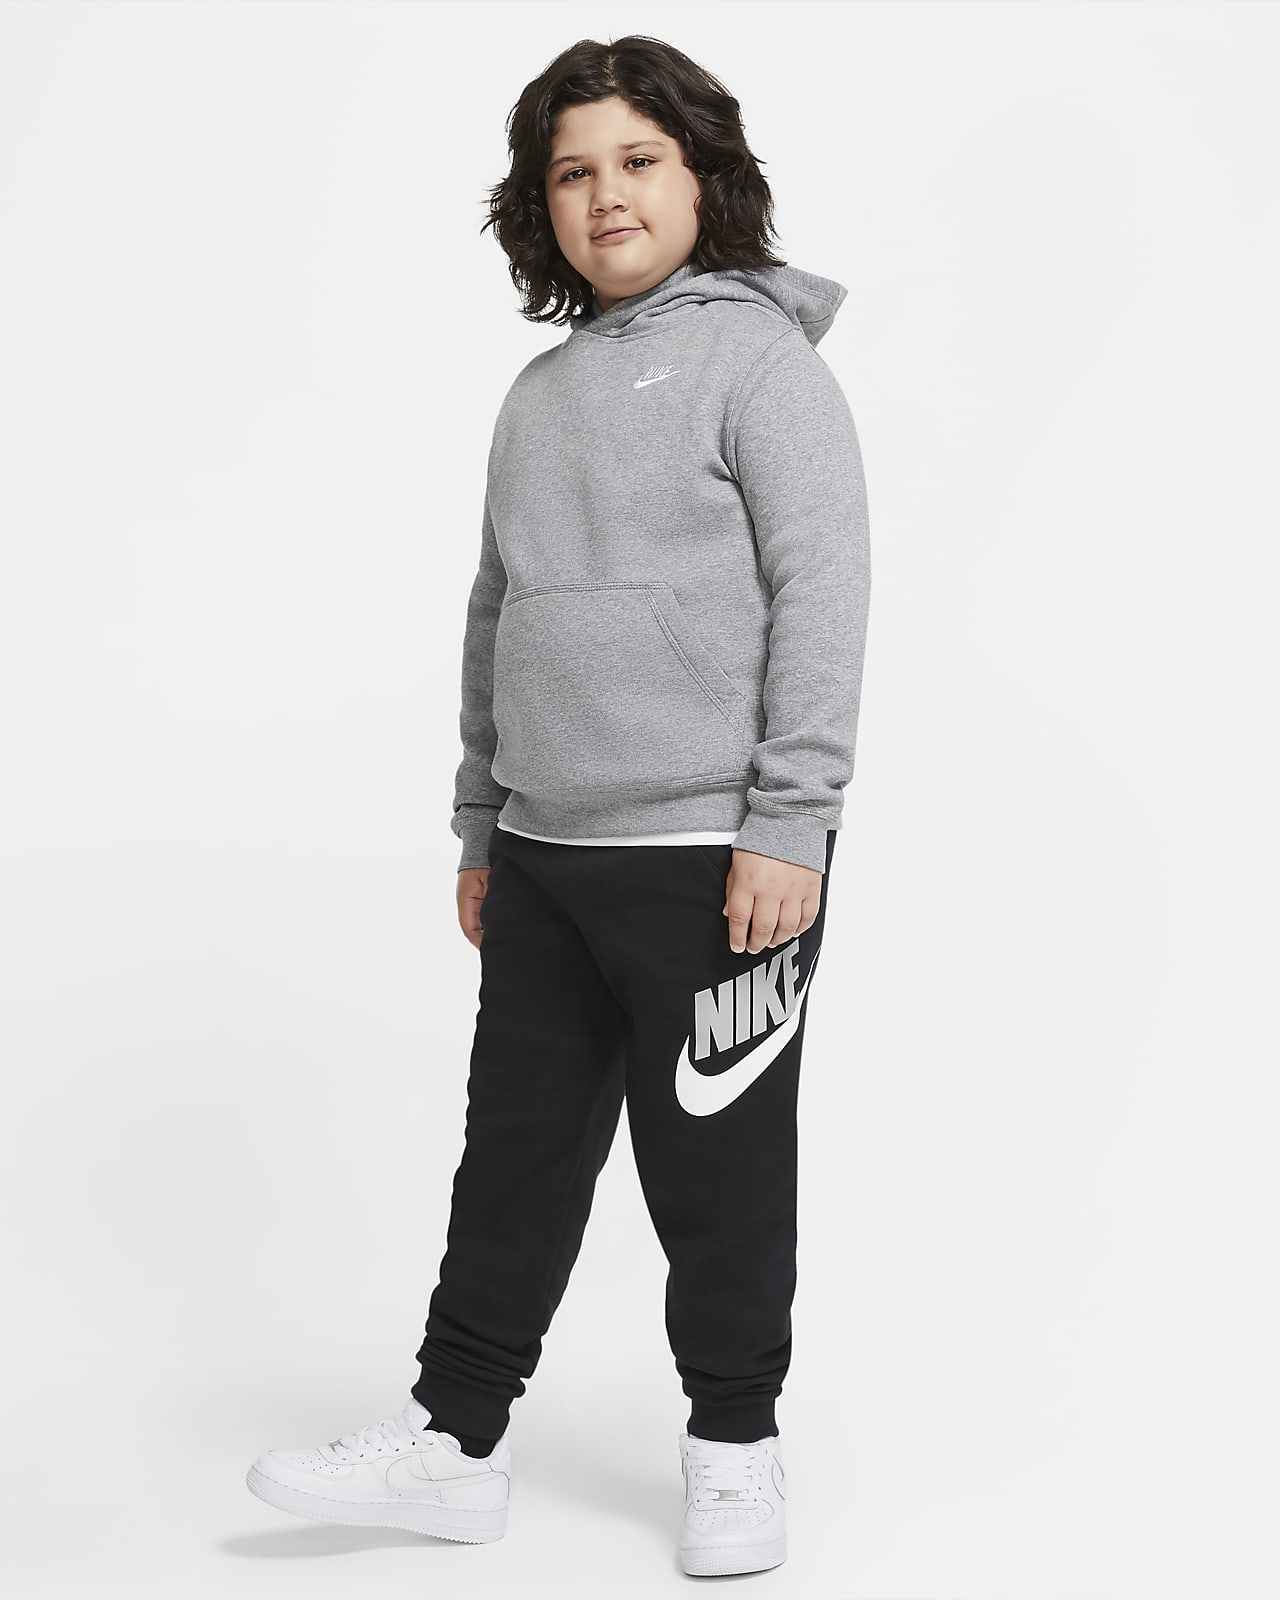 Hoodie Club Fleece CH Older Size). Pullover Nike Kids\' (Boys\') (Extended Sportswear Nike